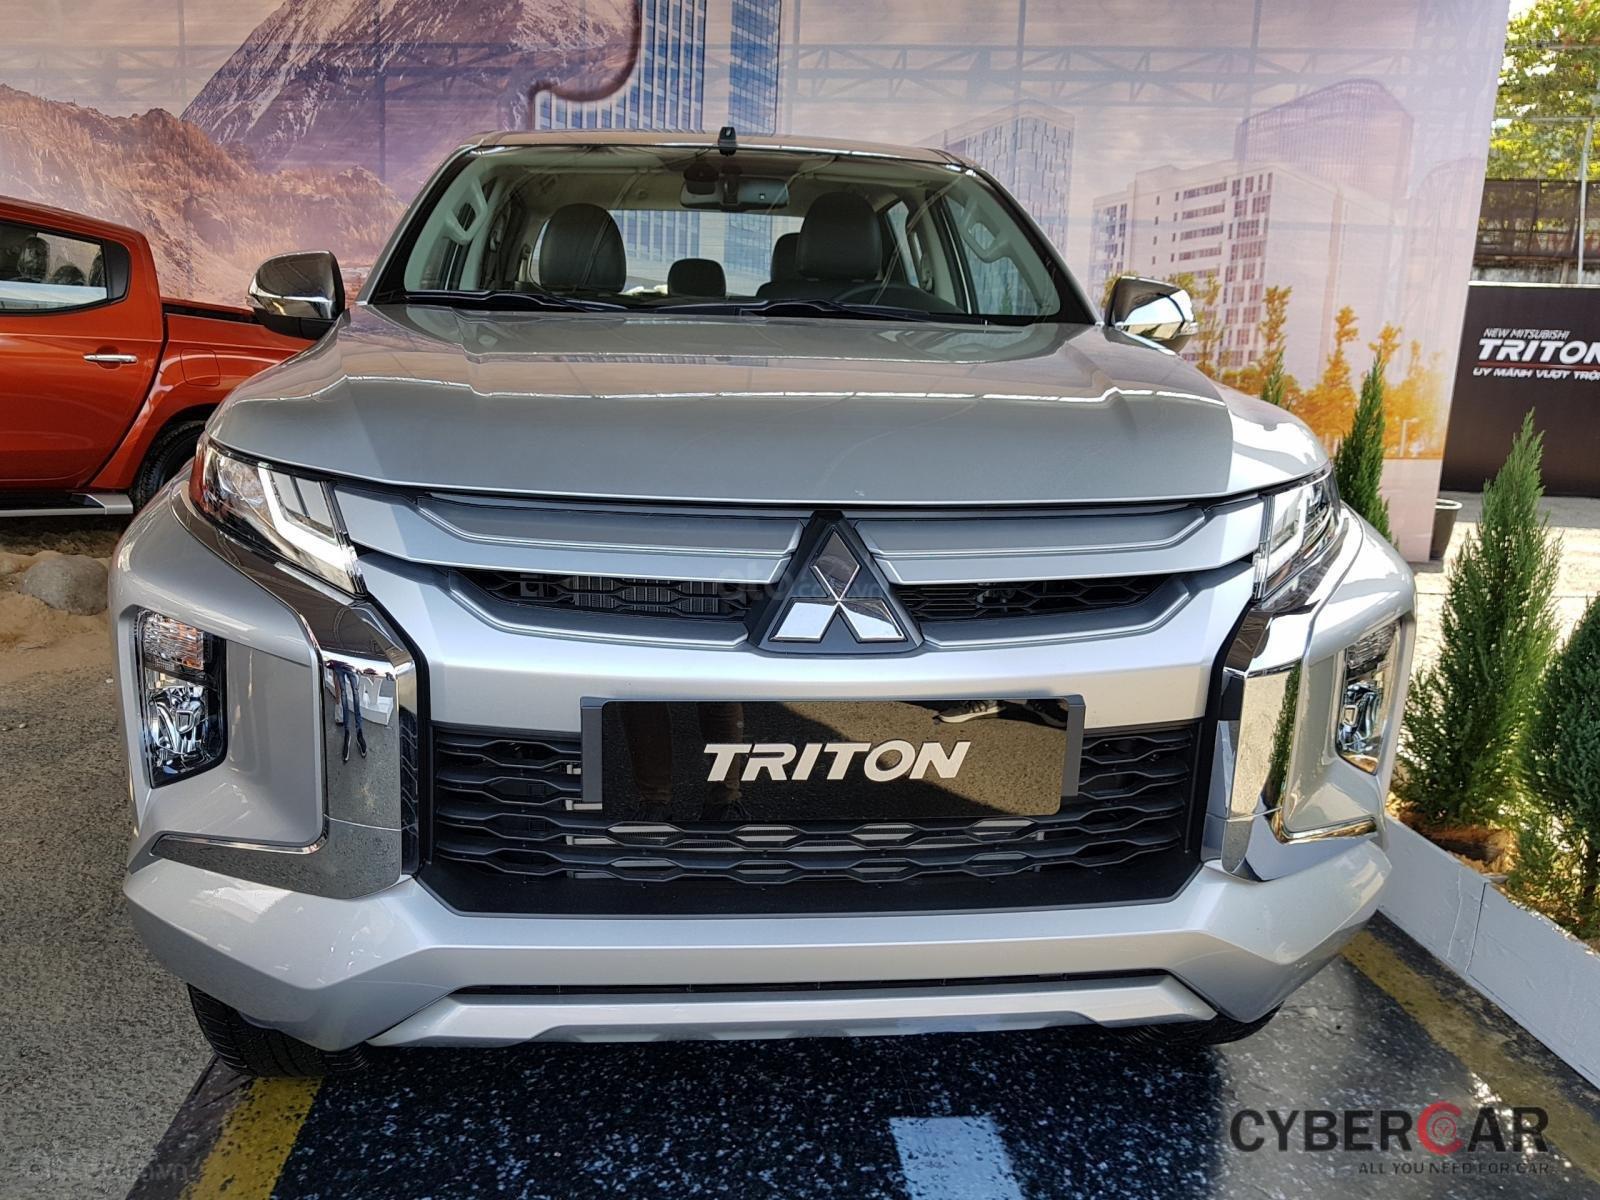 Thông số kỹ thuật chi tiết Mitsubishi Triton 2019 tại Việt Nam a2